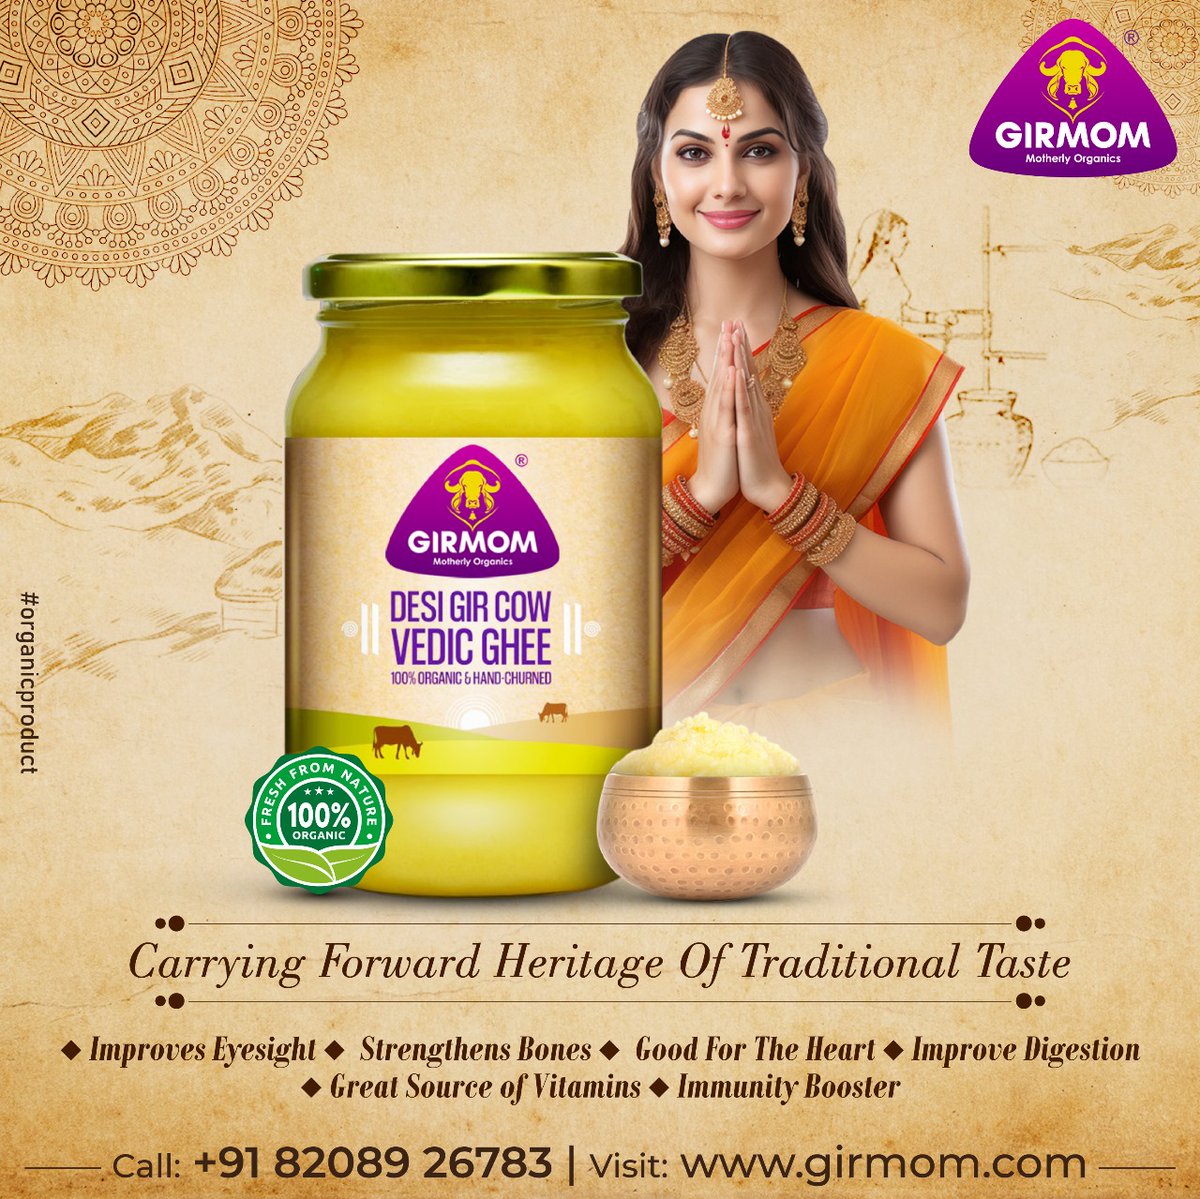 Carrying forward the heritage of traditional taste.
Buy Girmom Vedic Ghee, Available On Amazon & Flipkart
#girmom #girmomorganics #organics #vedic #vedicghee #ghee #desighee #cowghee #girmomghee #bilonaghee #ghee